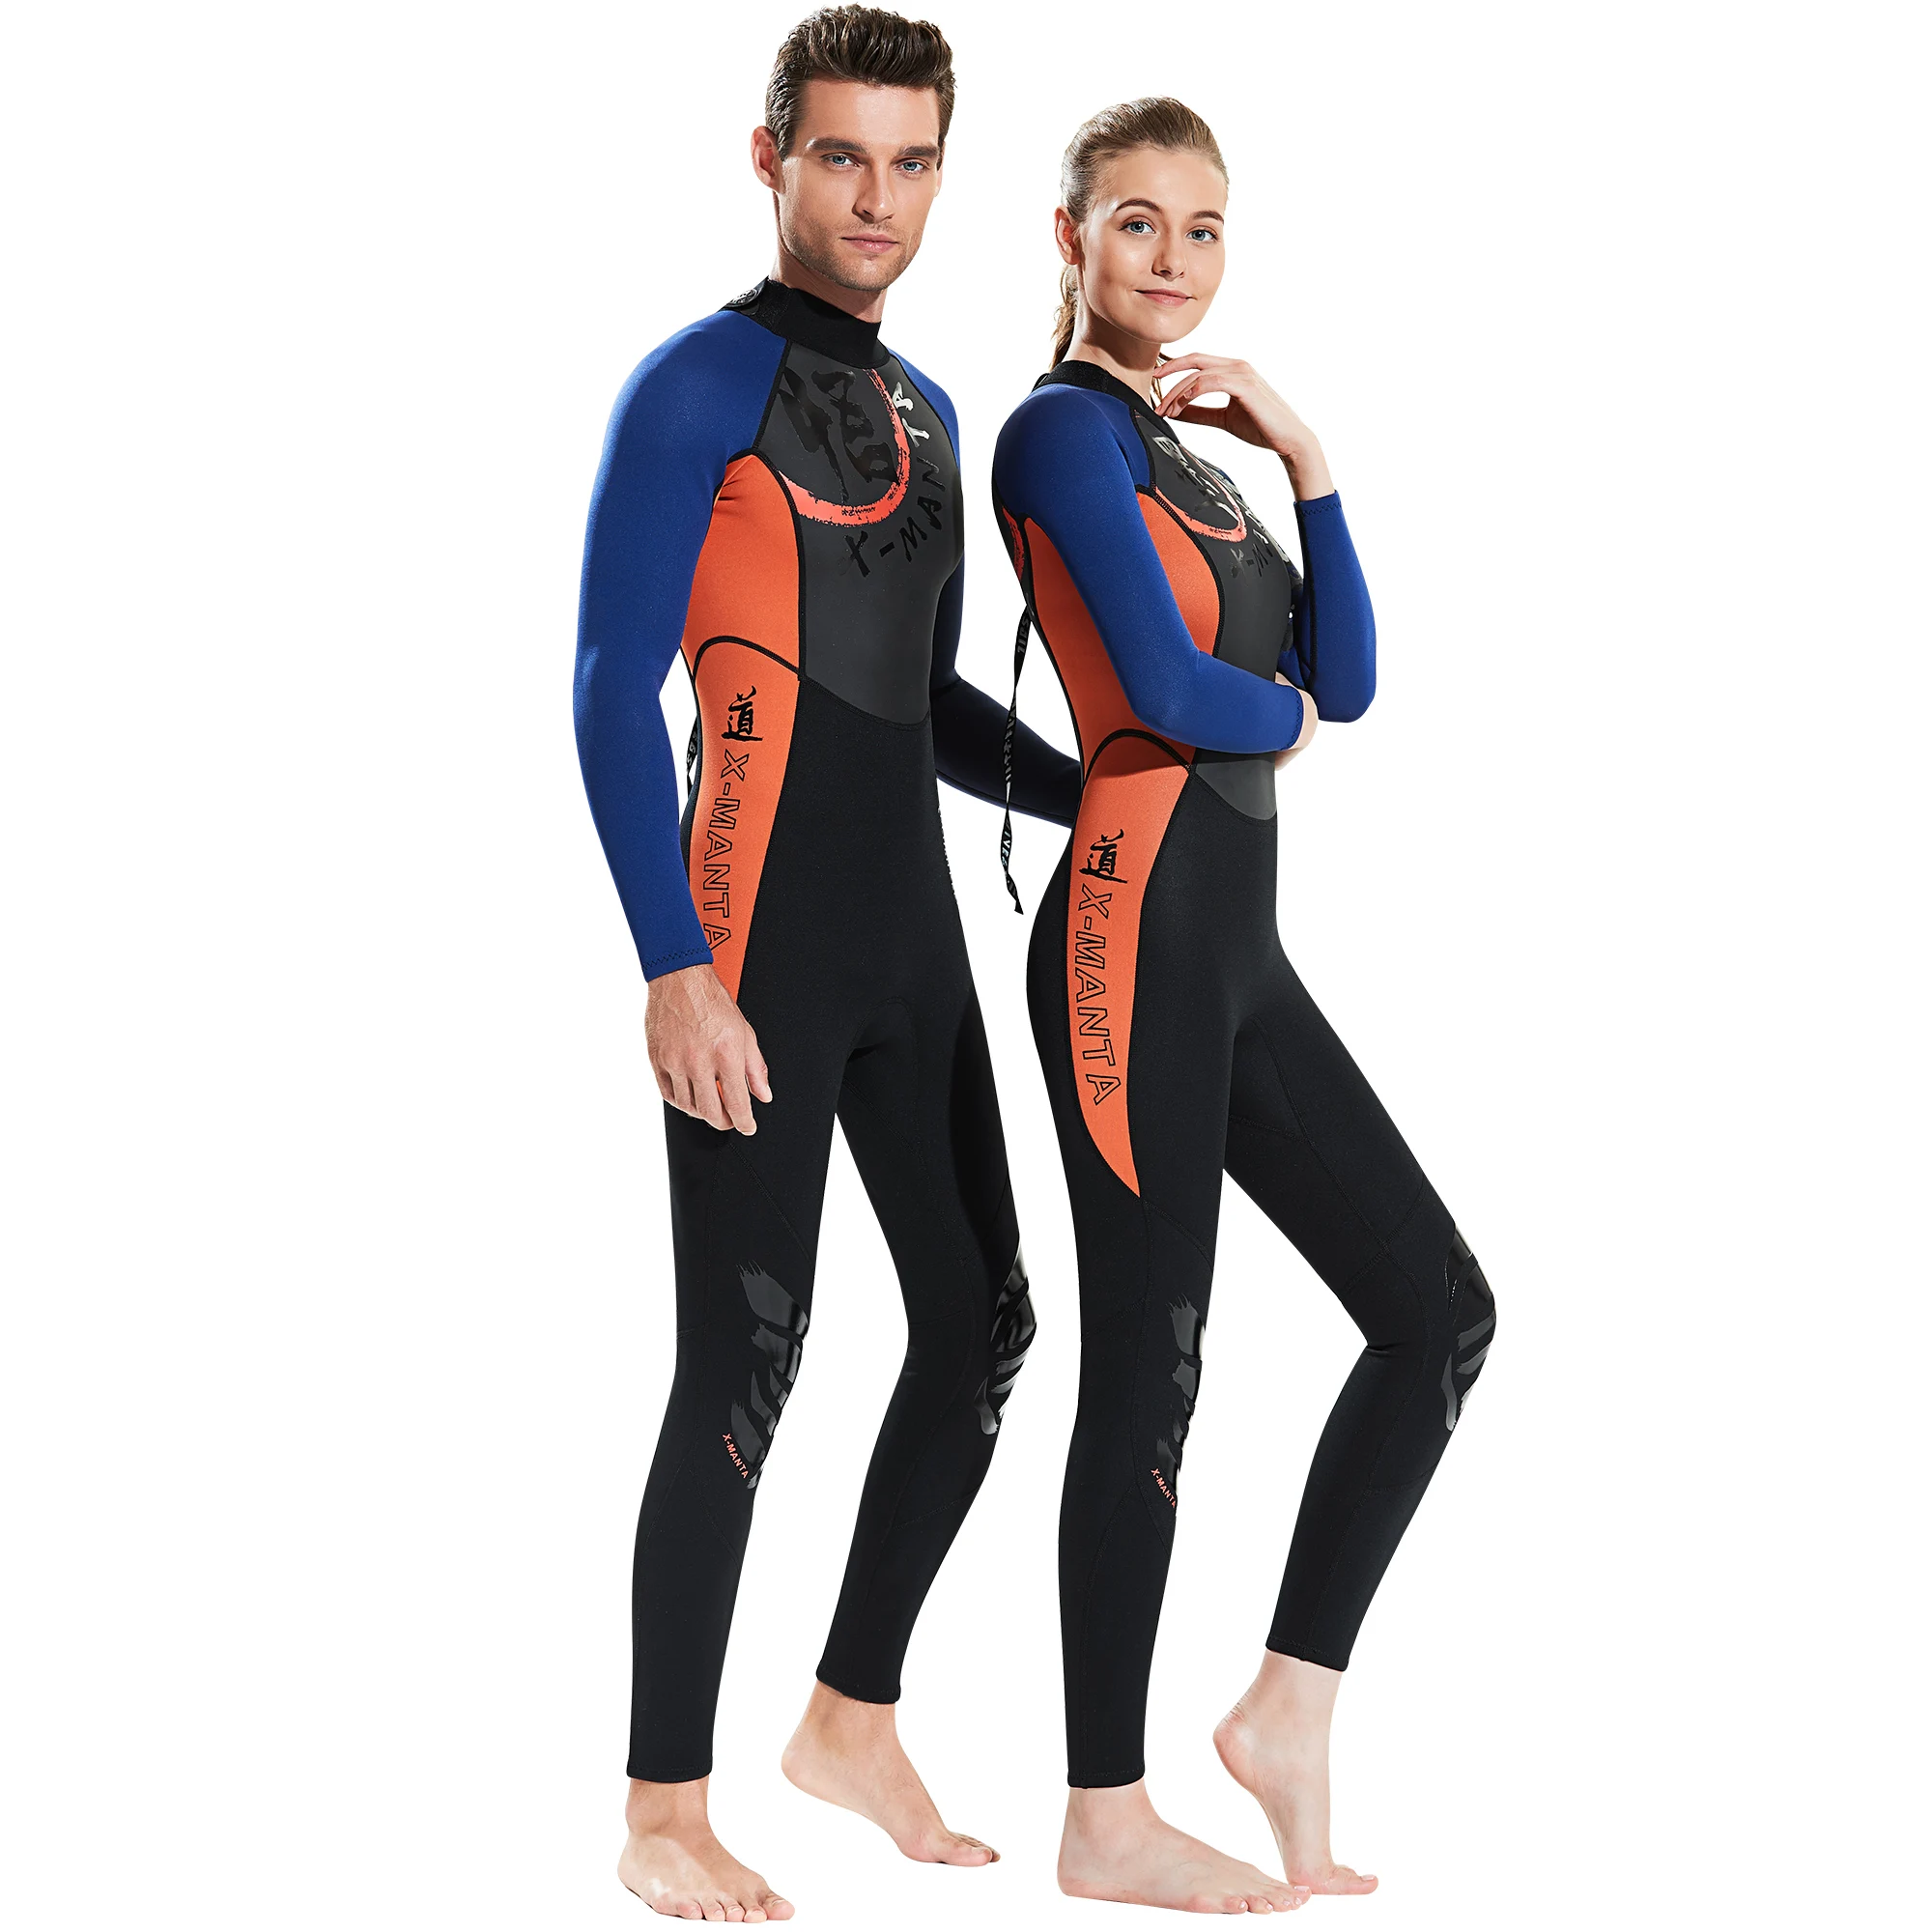 Chinoiseroy гидрокостюм для мужчин и женщин 3 мм неопрен+ Акула кожа пэчворк полный корпус Дайвинг костюм для подводного плавания сёрфинга Дайвинг парусный спорт